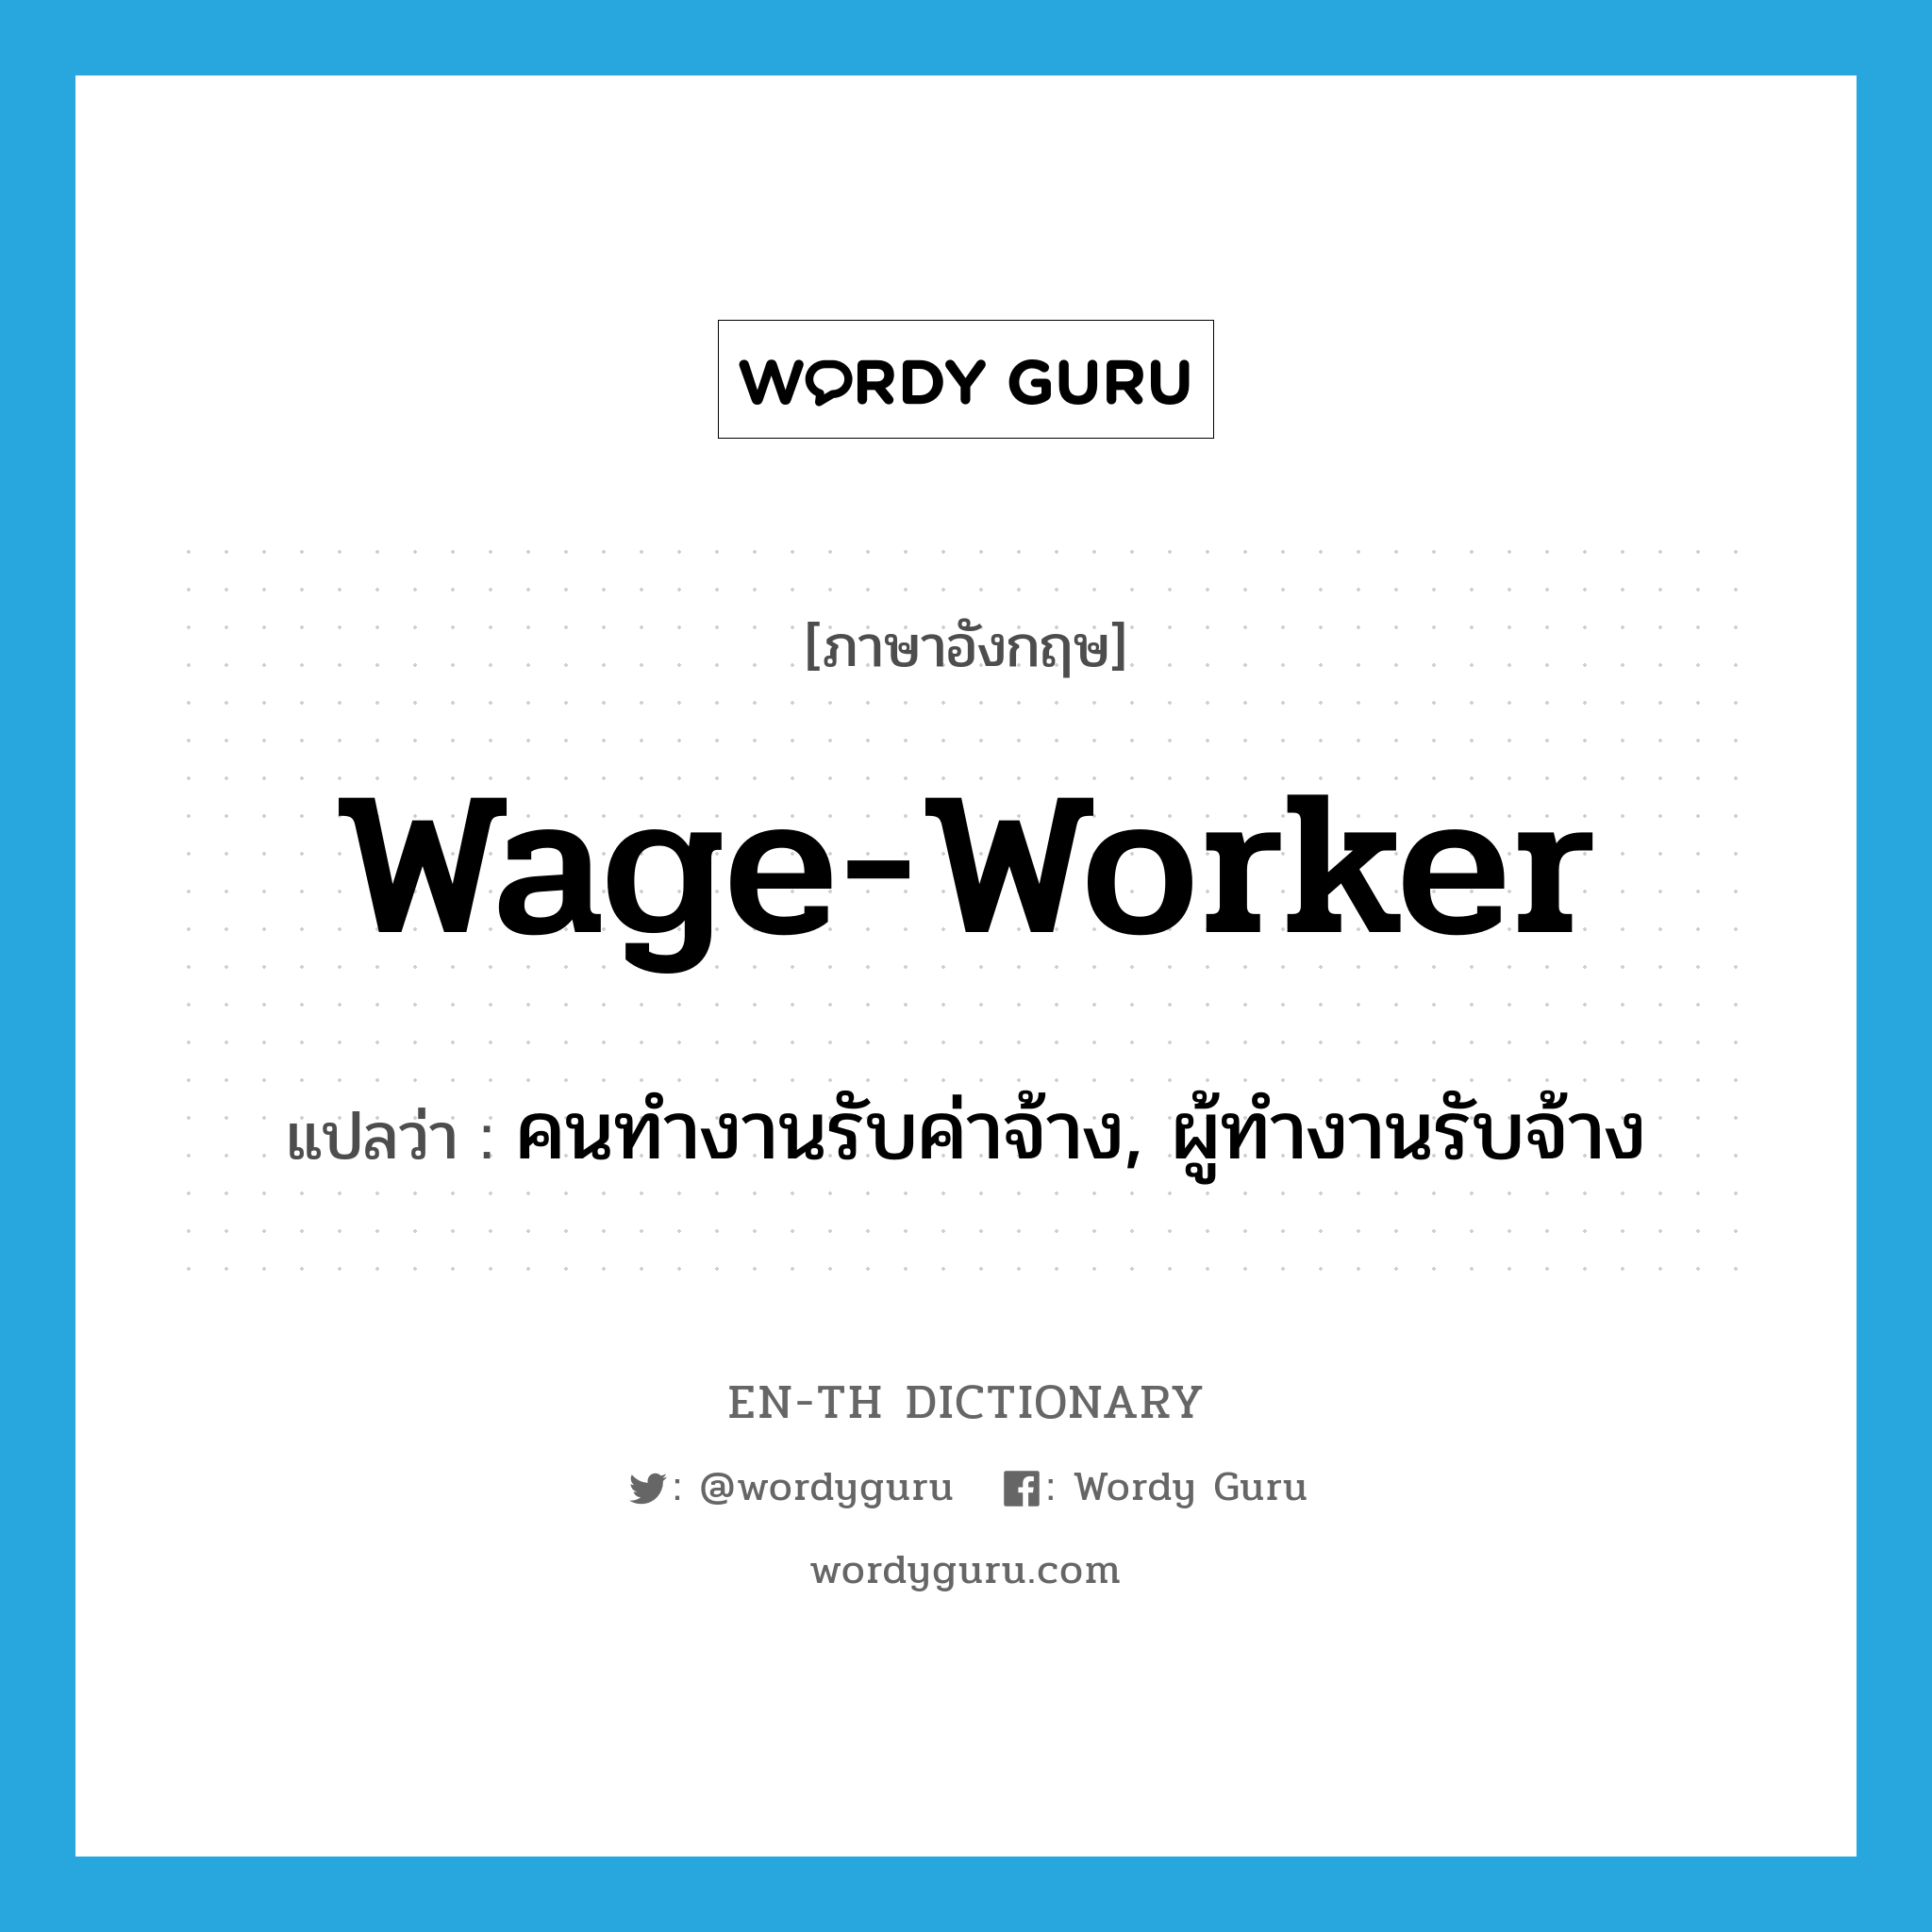 คนทำงานรับค่าจ้าง, ผู้ทำงานรับจ้าง ภาษาอังกฤษ?, คำศัพท์ภาษาอังกฤษ คนทำงานรับค่าจ้าง, ผู้ทำงานรับจ้าง แปลว่า wage-worker ประเภท N หมวด N